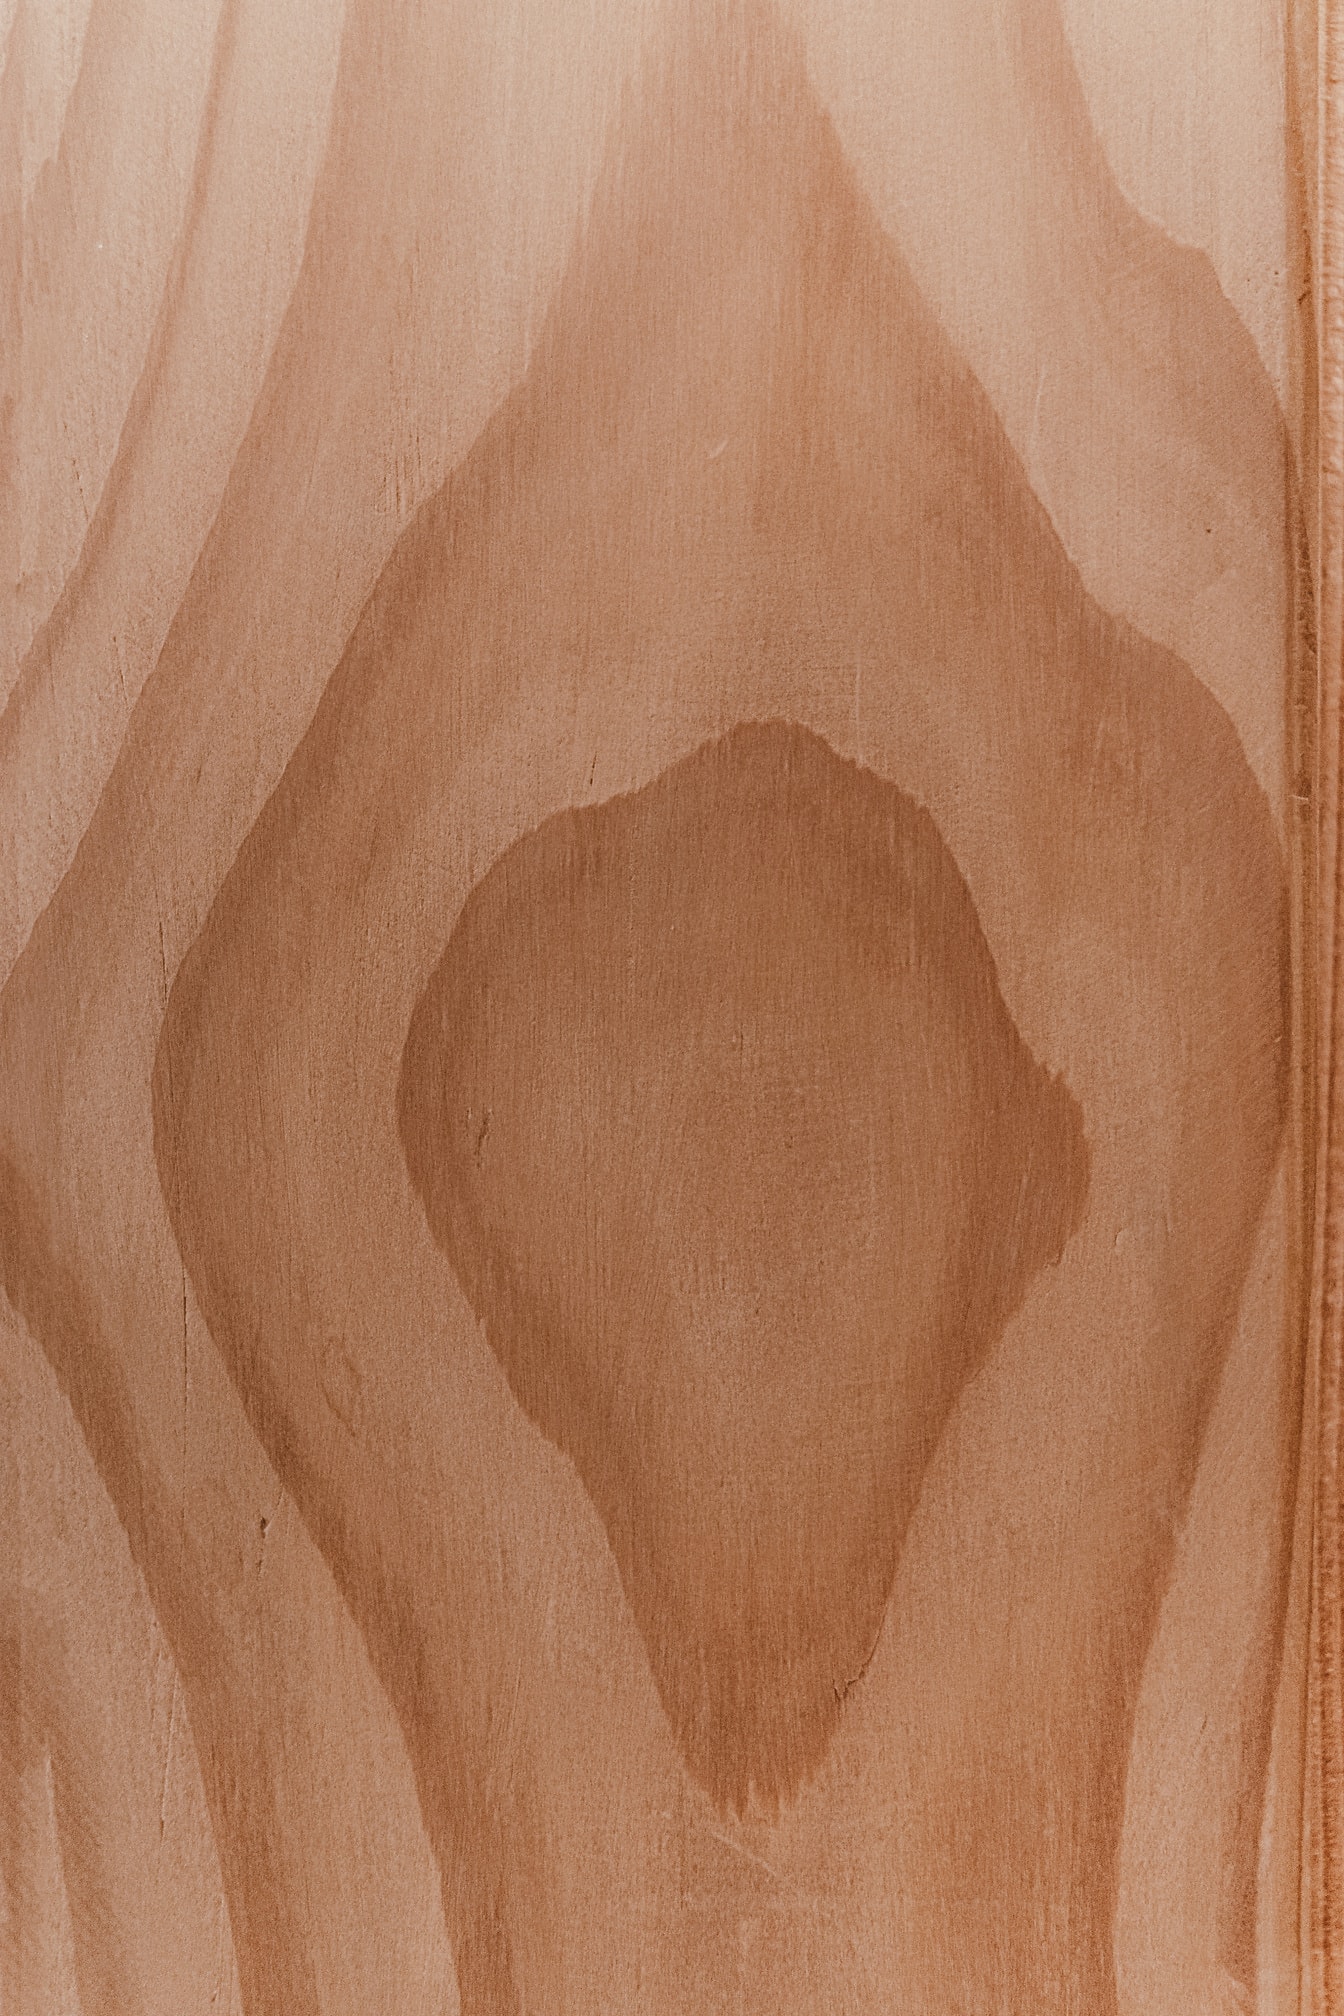 Sezione trasversale del nodo della tavola di legno di quercia